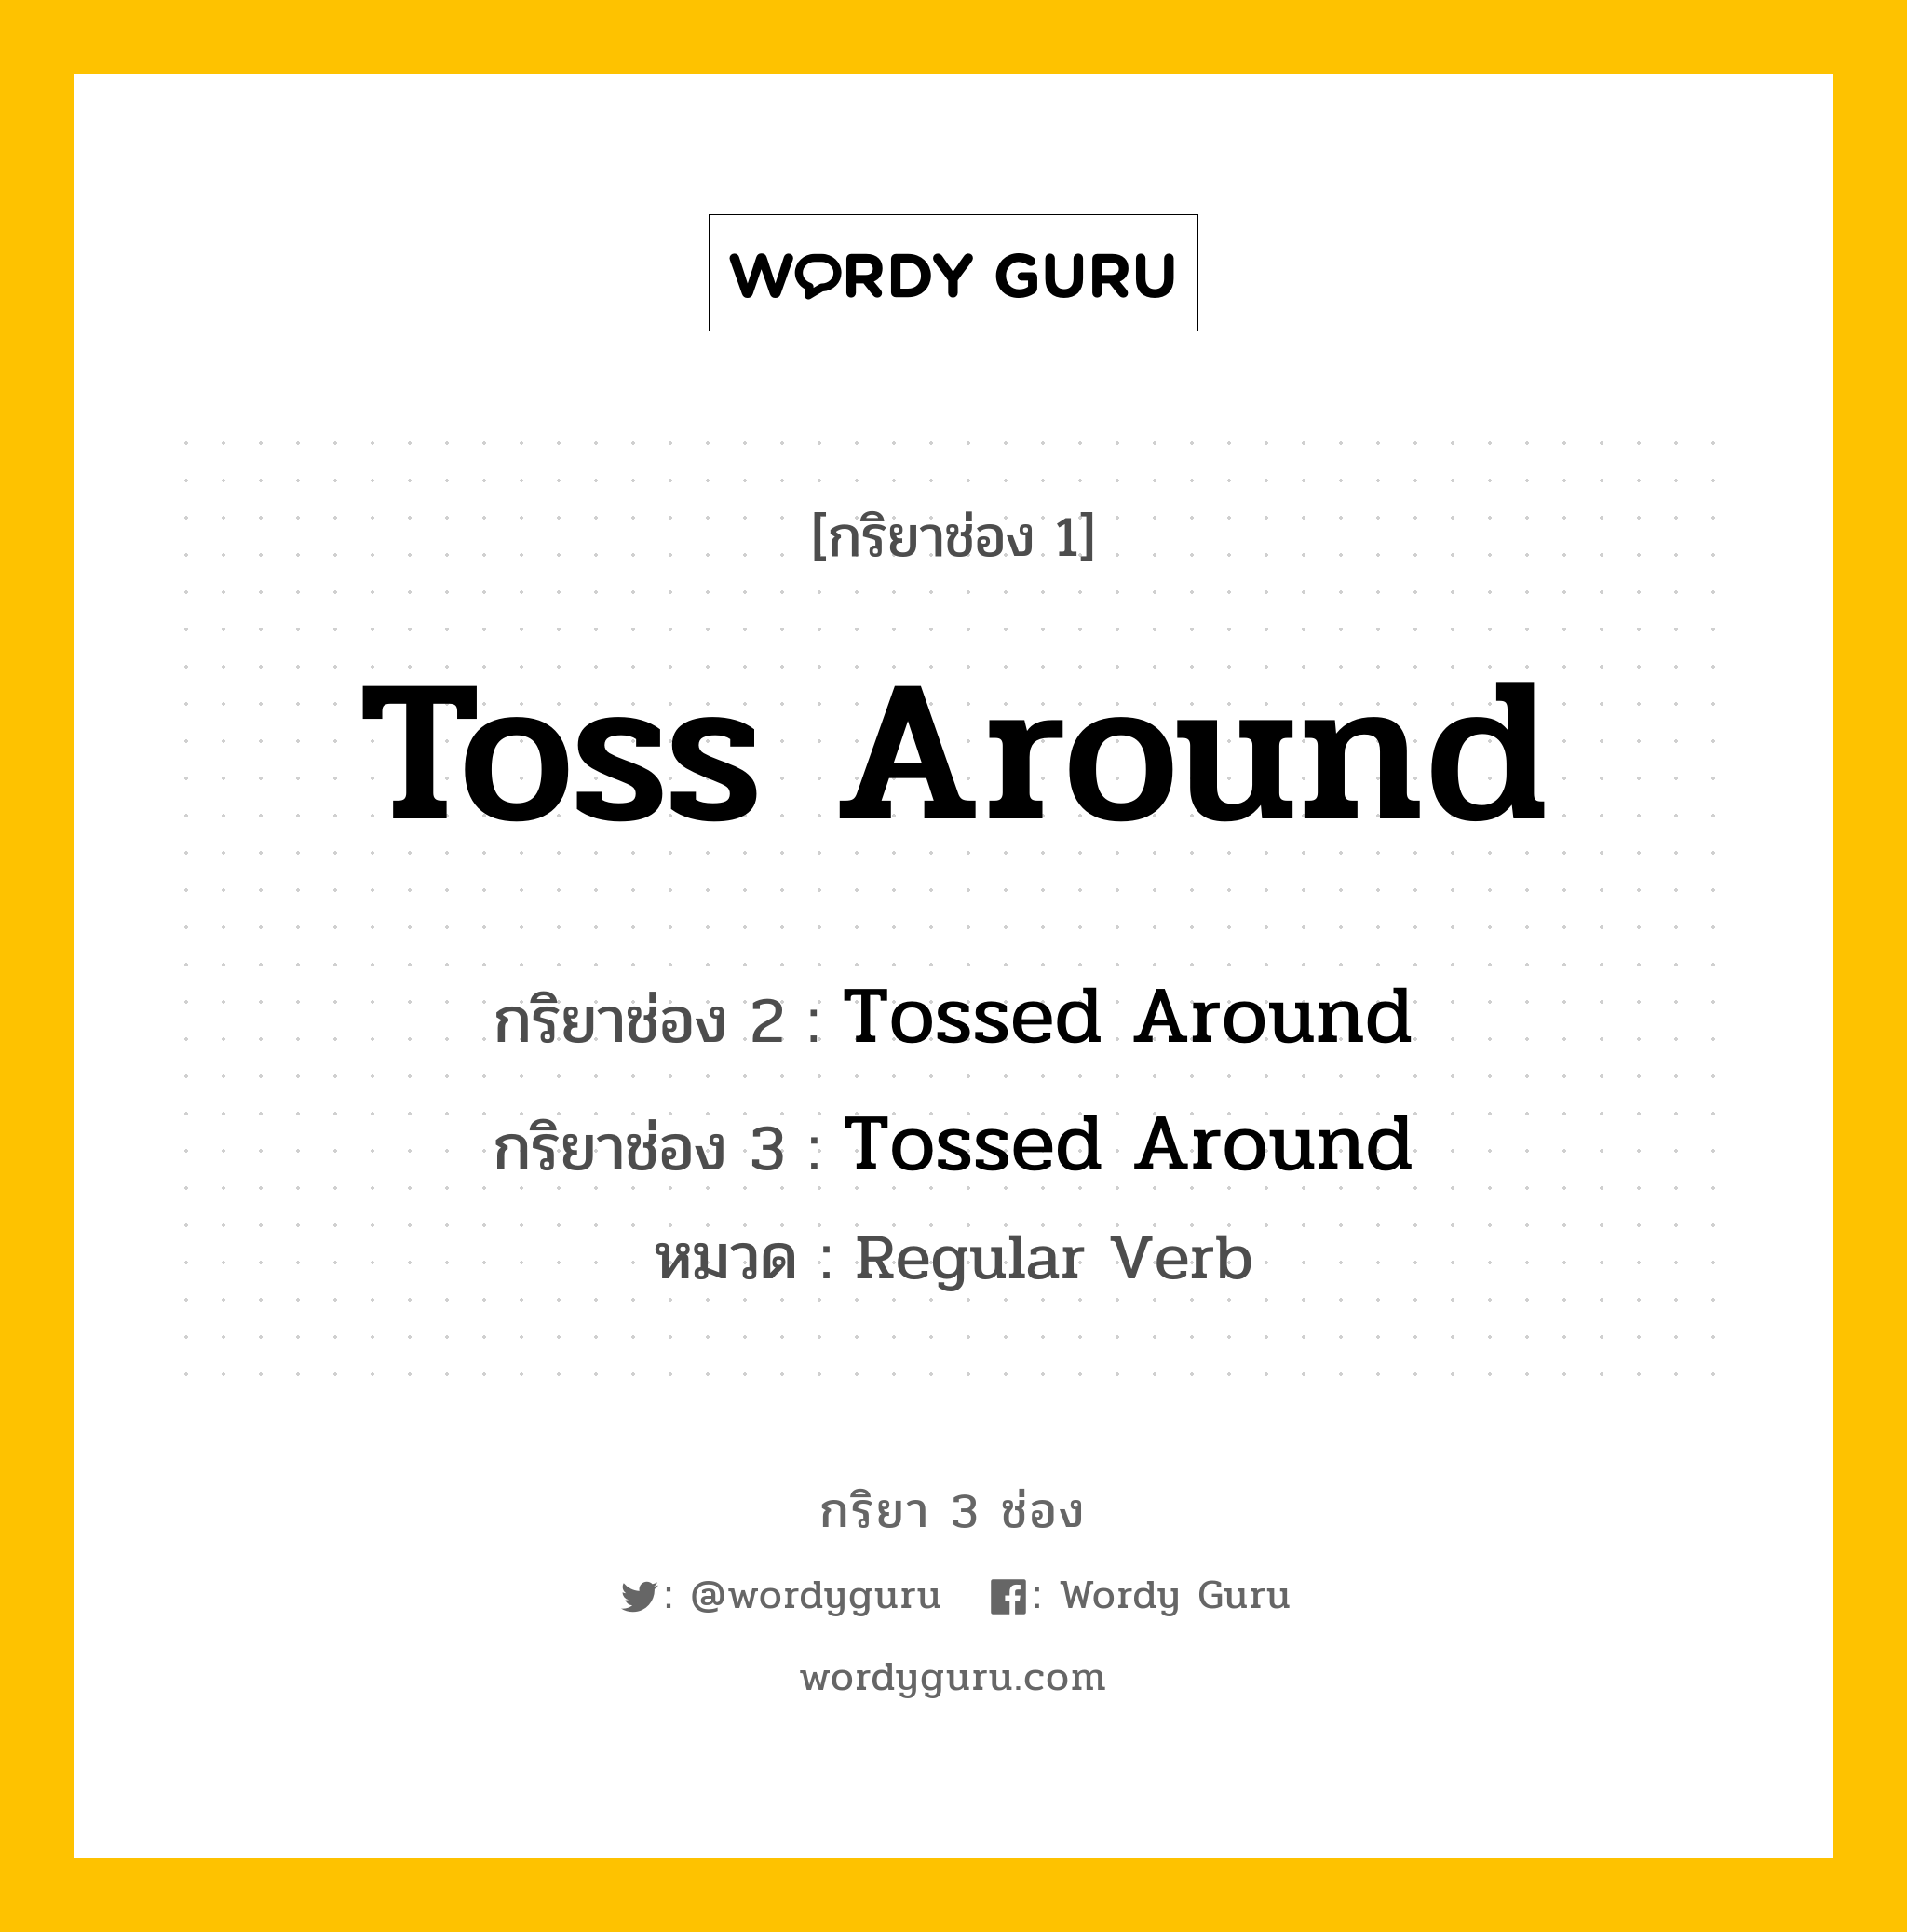 กริยา 3 ช่อง: Toss Around ช่อง 2 Toss Around ช่อง 3 คืออะไร, กริยาช่อง 1 Toss Around กริยาช่อง 2 Tossed Around กริยาช่อง 3 Tossed Around หมวด Regular Verb หมวด Regular Verb